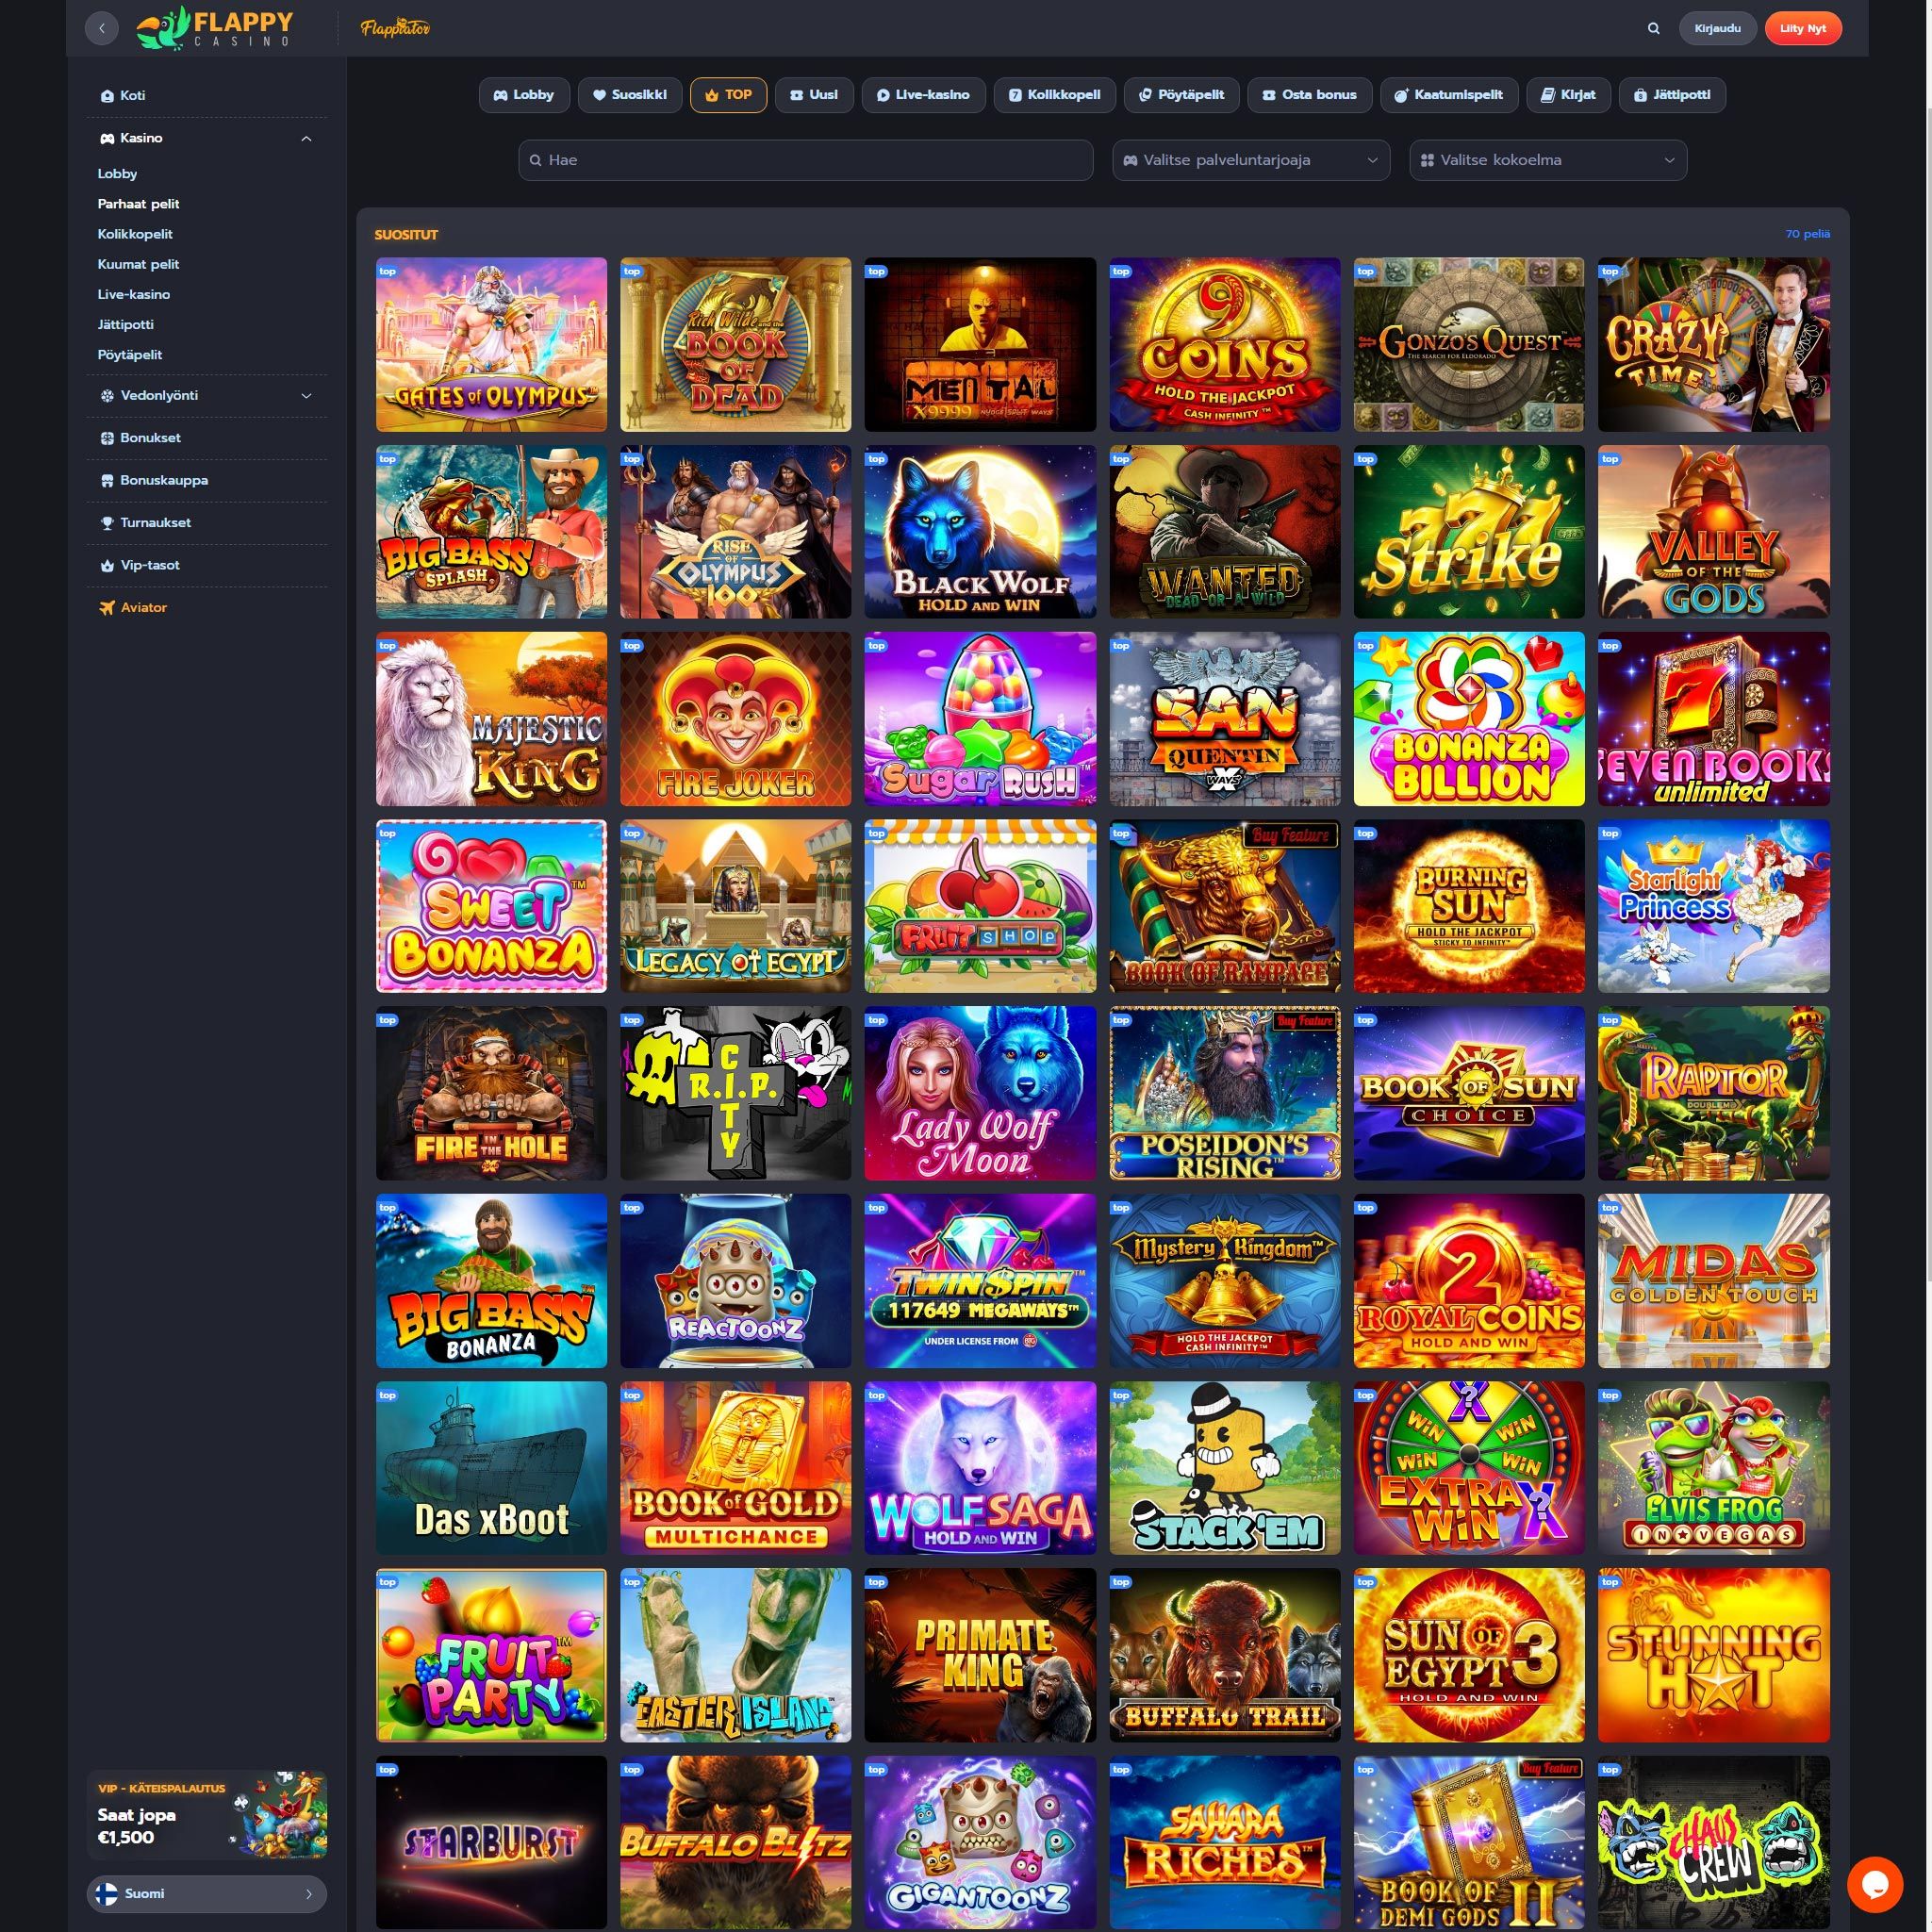 Pelaa netticasino Flappy Casino voittaaksesi oikeaa rahaa – oikean rahan online casino! Vertaa kaikki nettikasinot ja löydä parhaat casinot Suomessa.